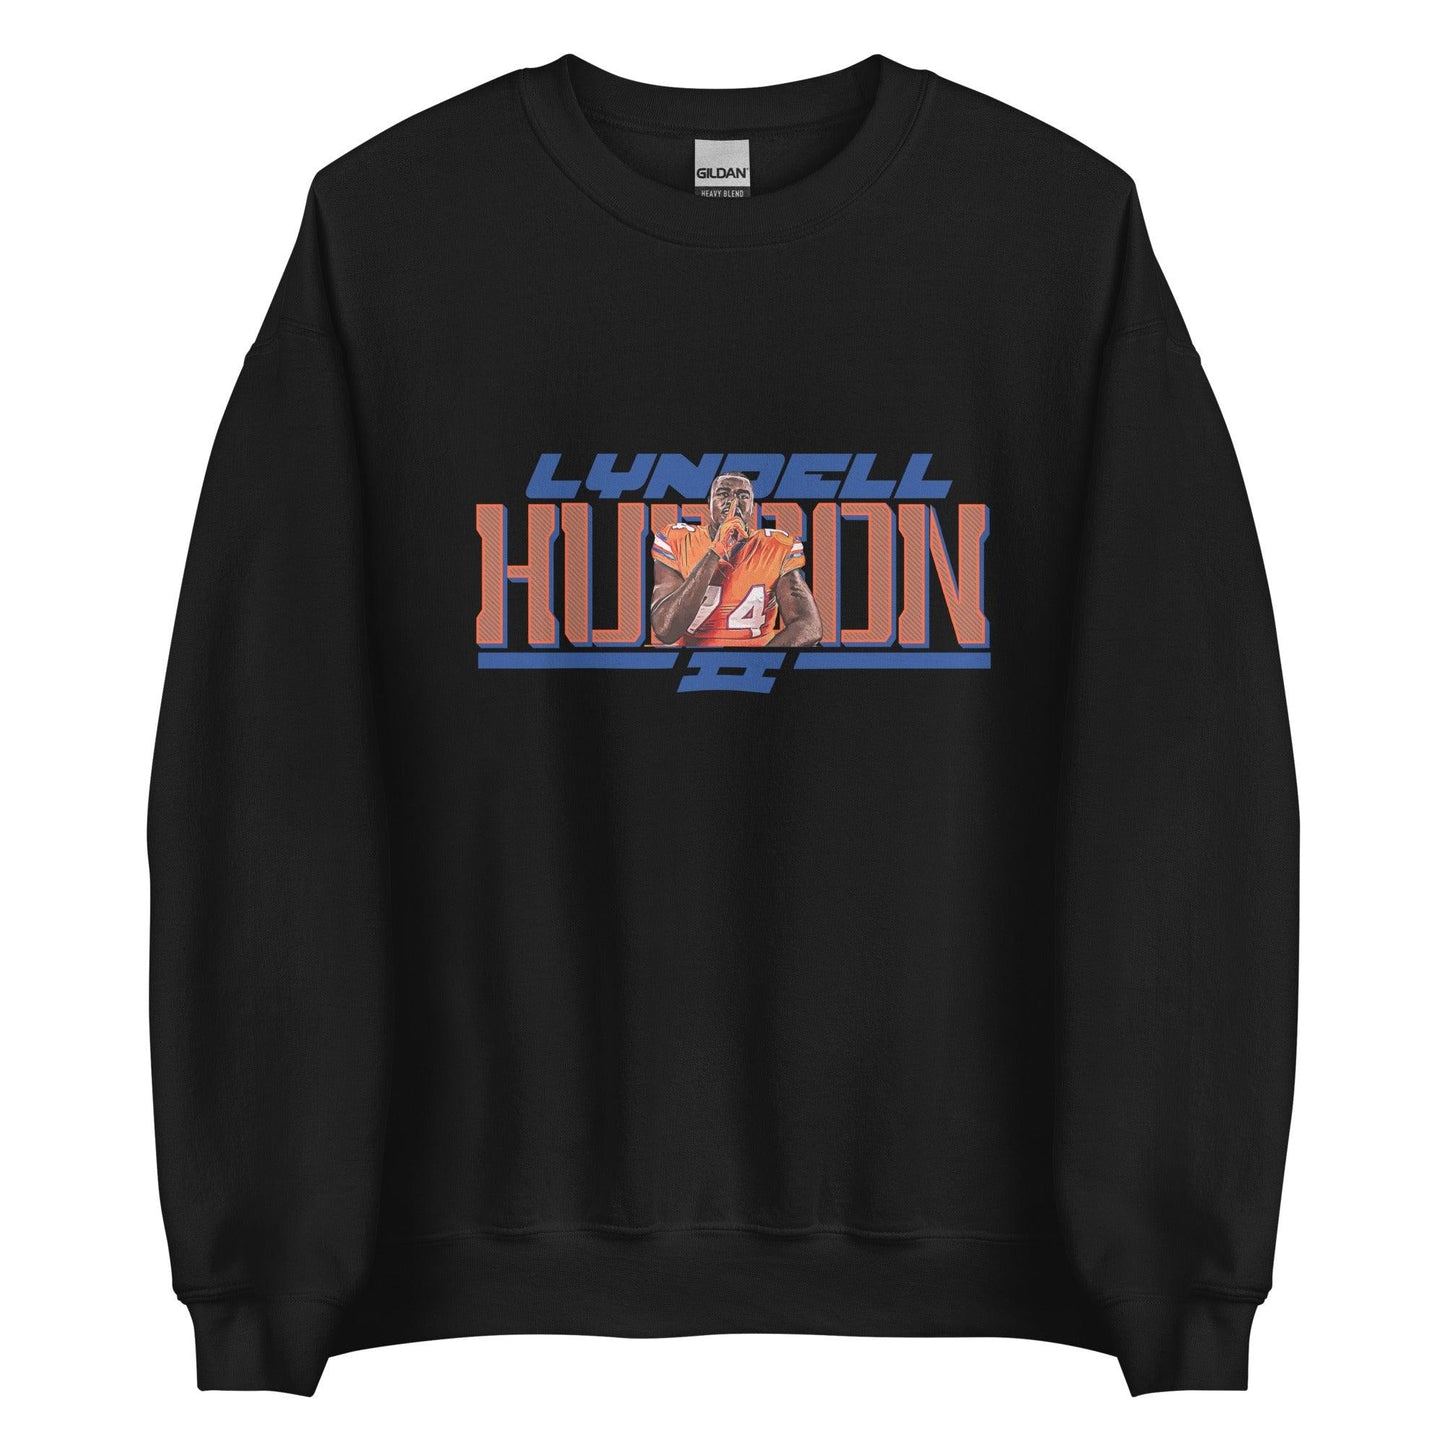 Lyndell Hudson II "Gameday" Sweatshirt - Fan Arch